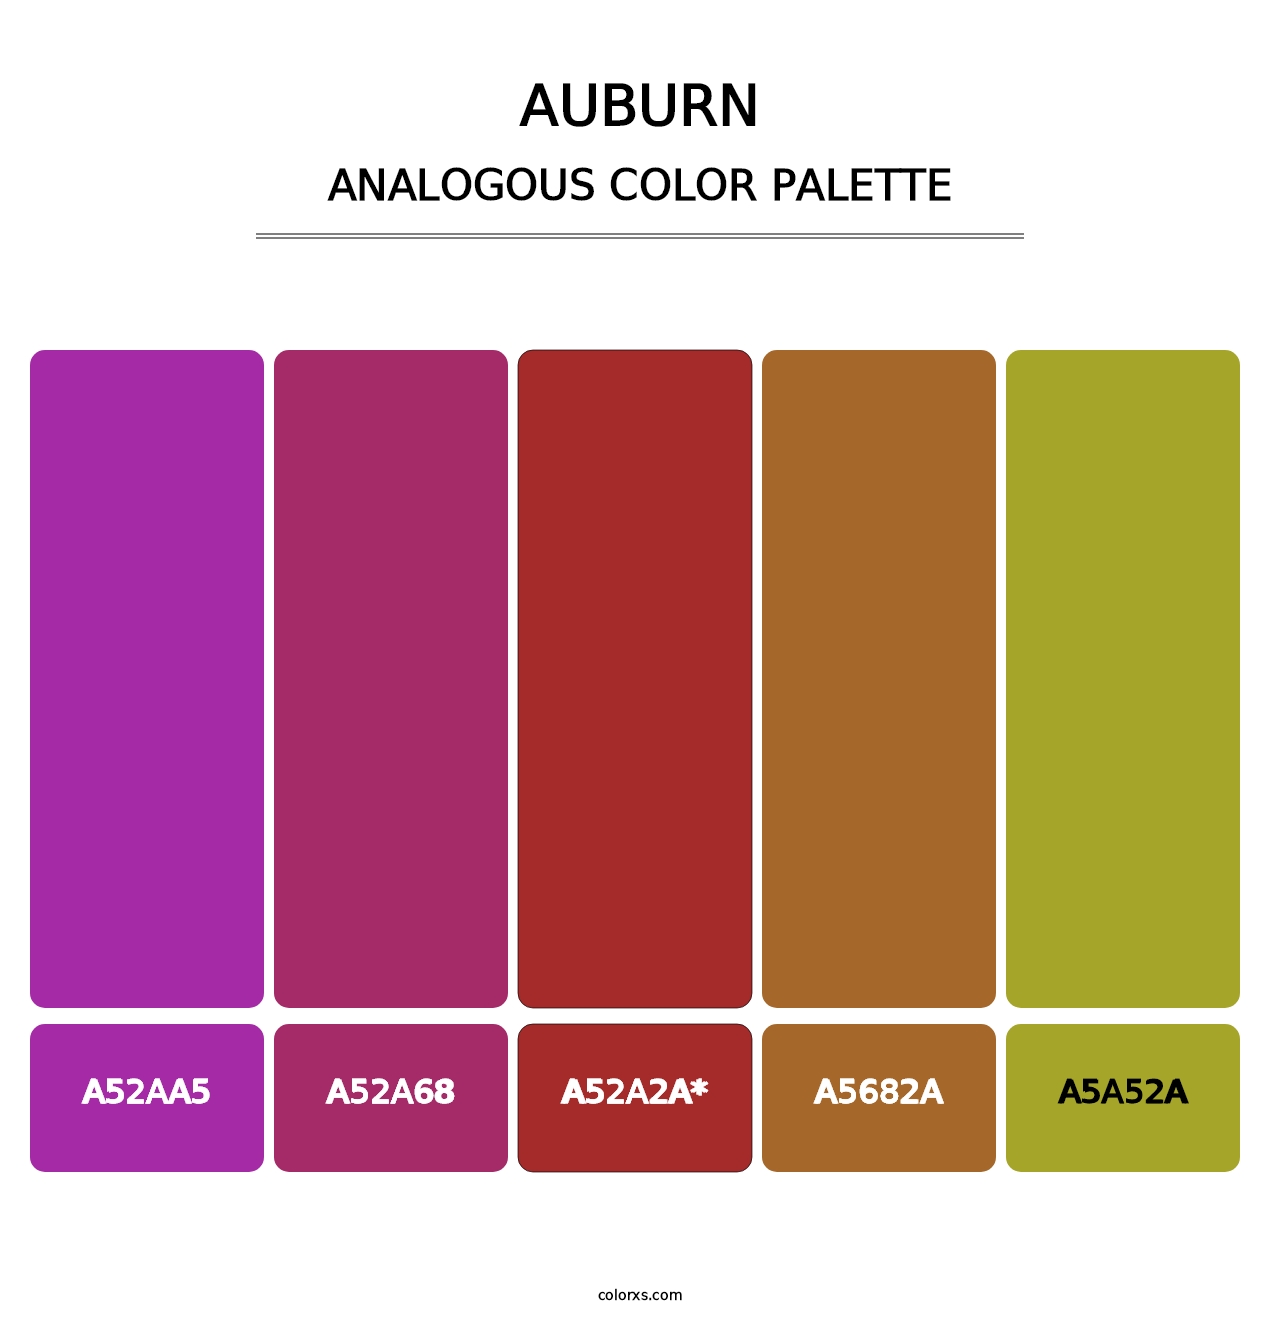 Auburn - Analogous Color Palette